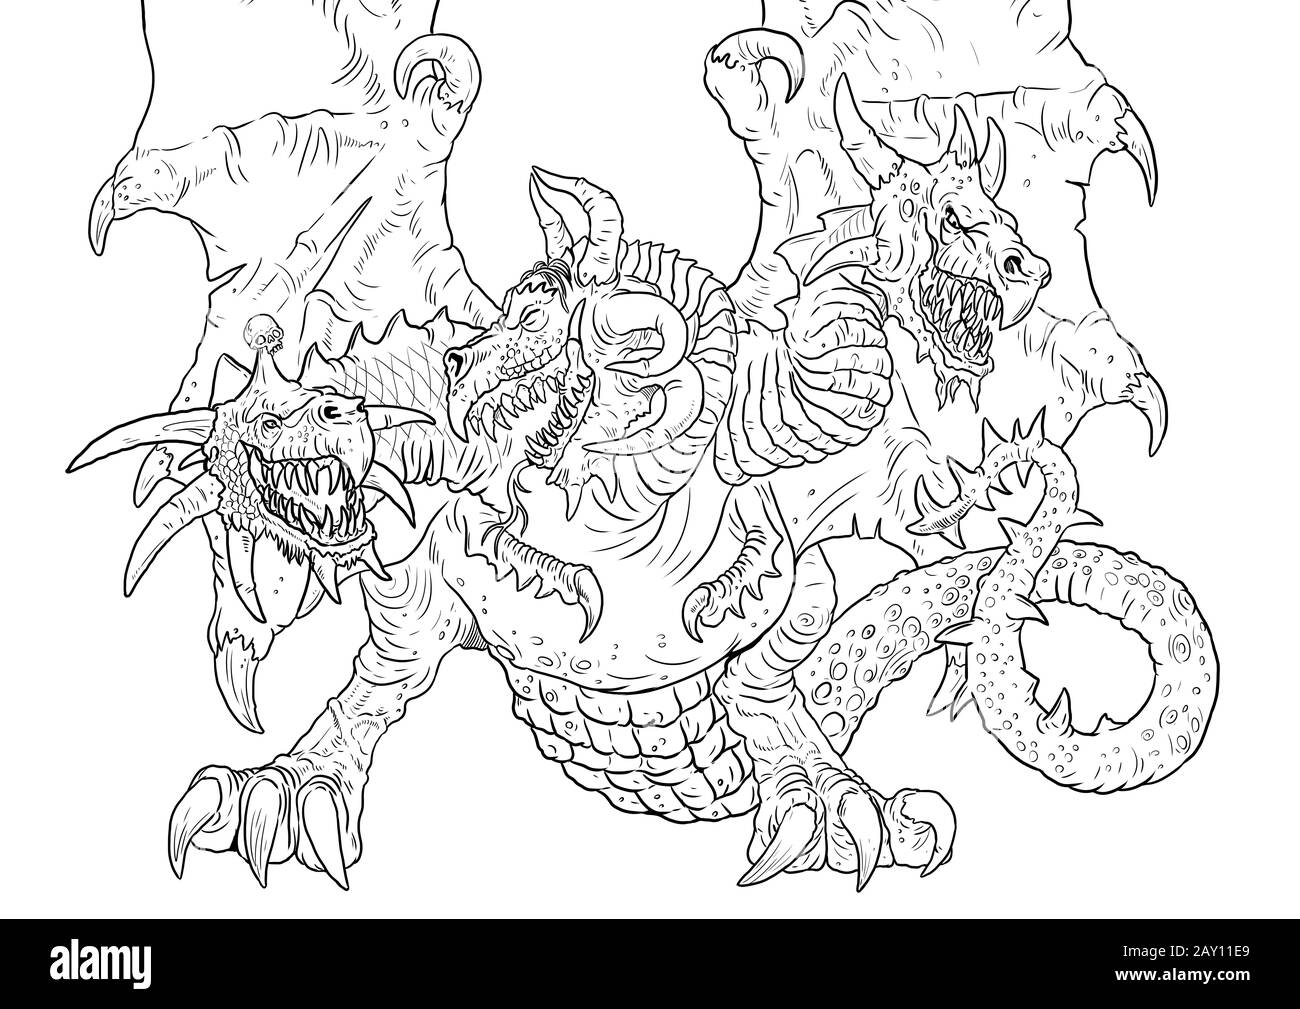 Dragon drawing Banque d'images détourées - Alamy